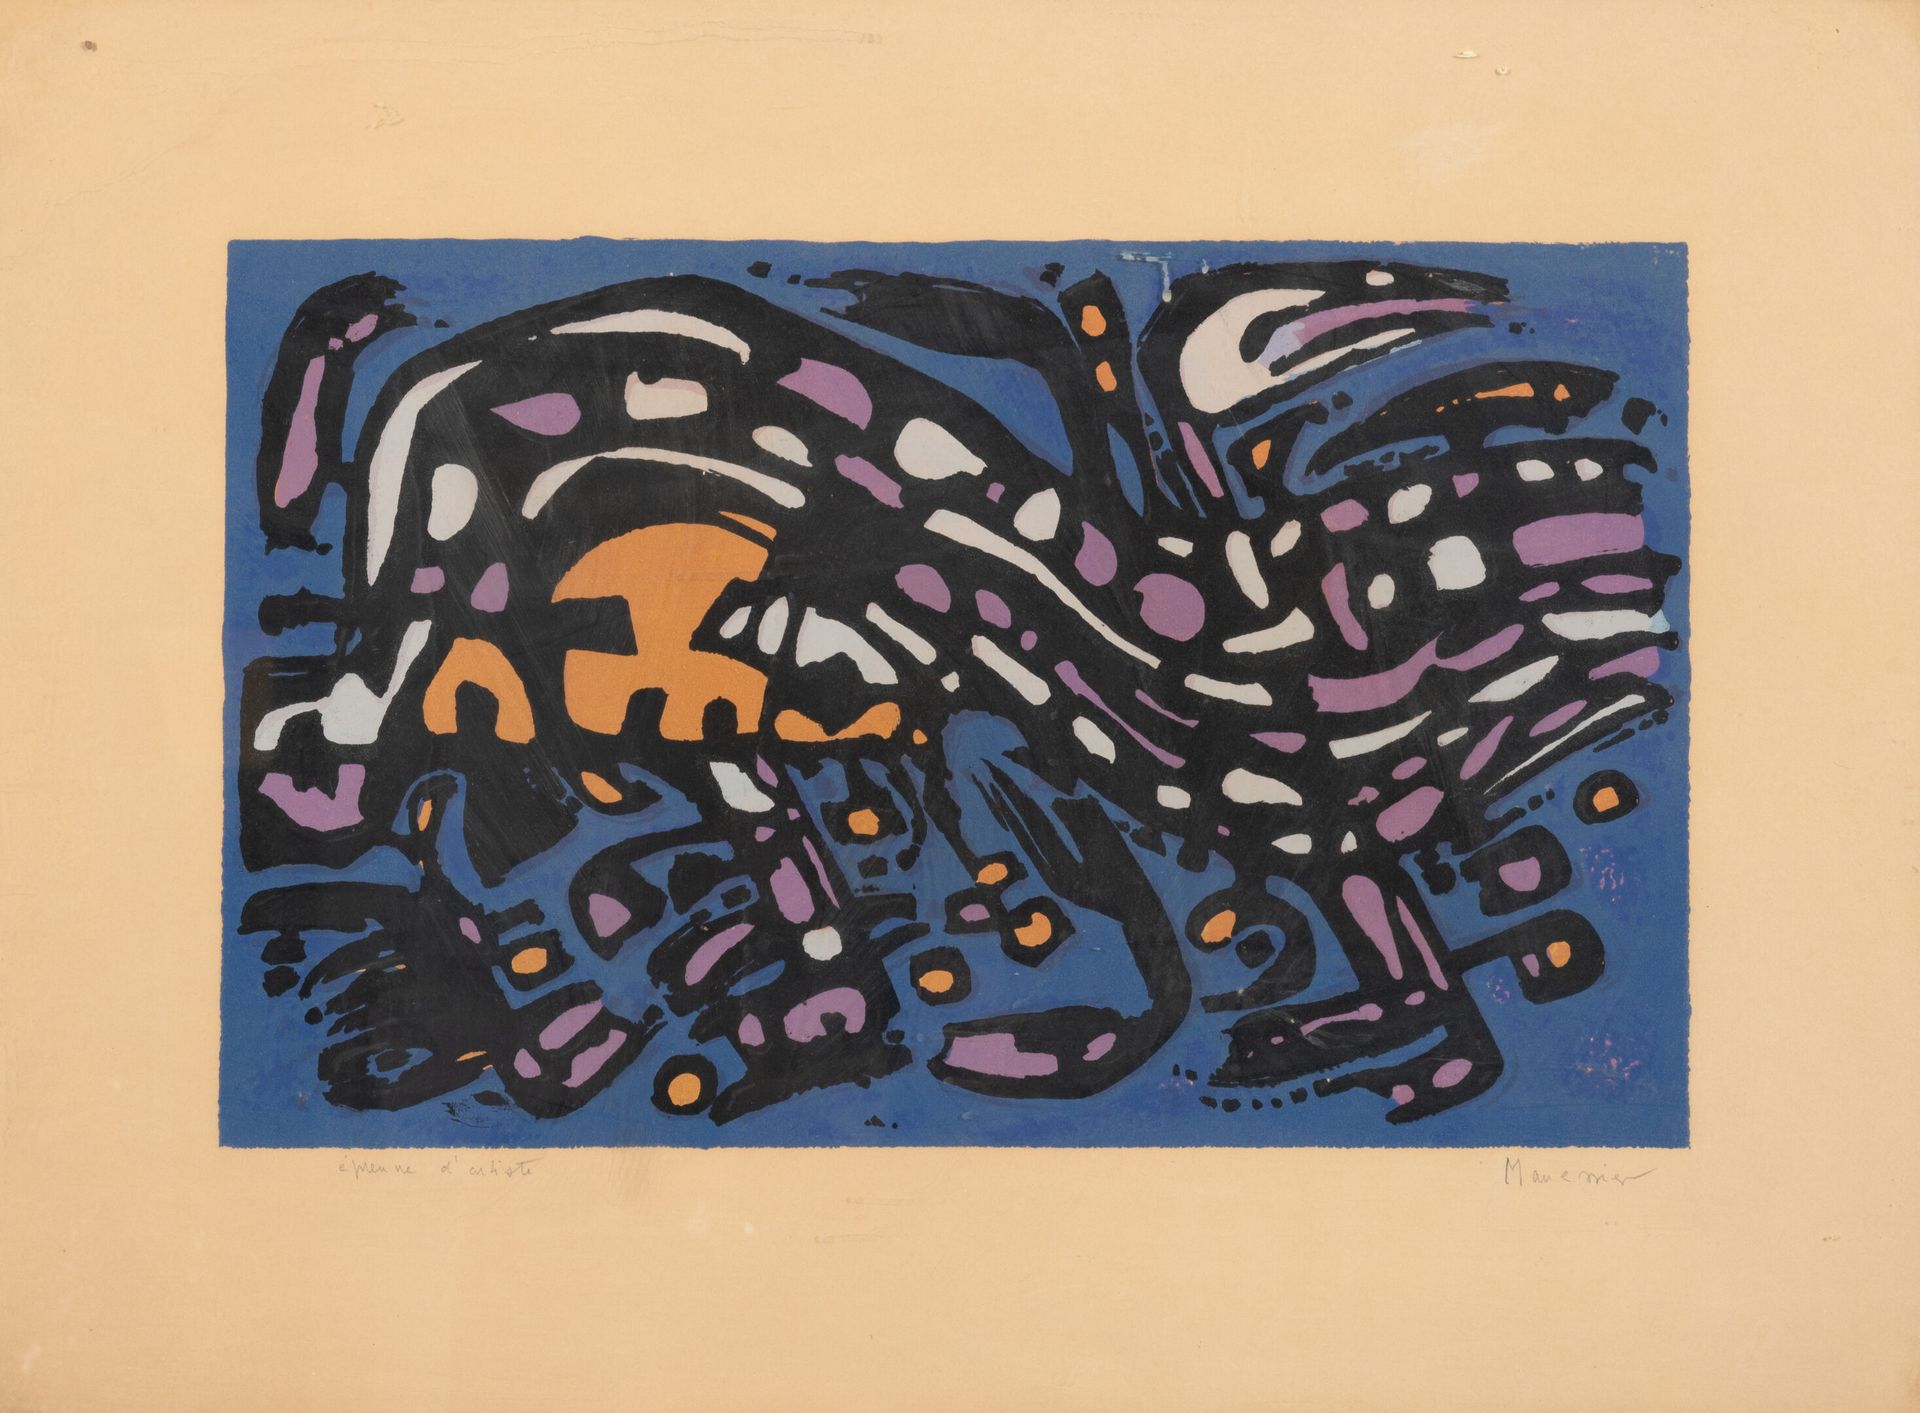 D'après Alfred MANESSIER (1911-1993) Noche, 1957.
Litografía en color sobre pape&hellip;